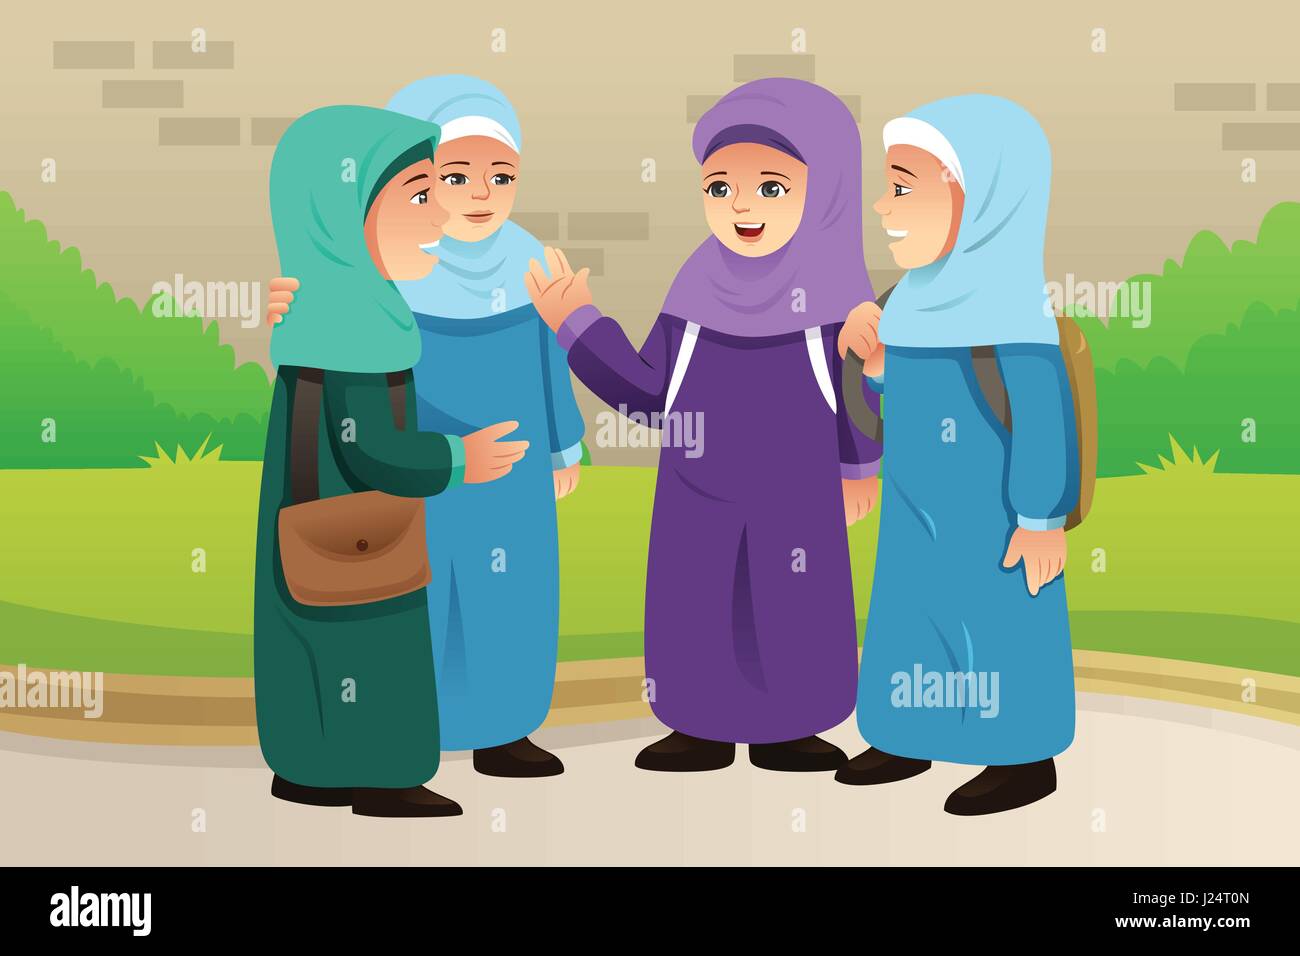 Eine Vektor-Illustration der muslimischen Kinder reden miteinander Stock Vektor